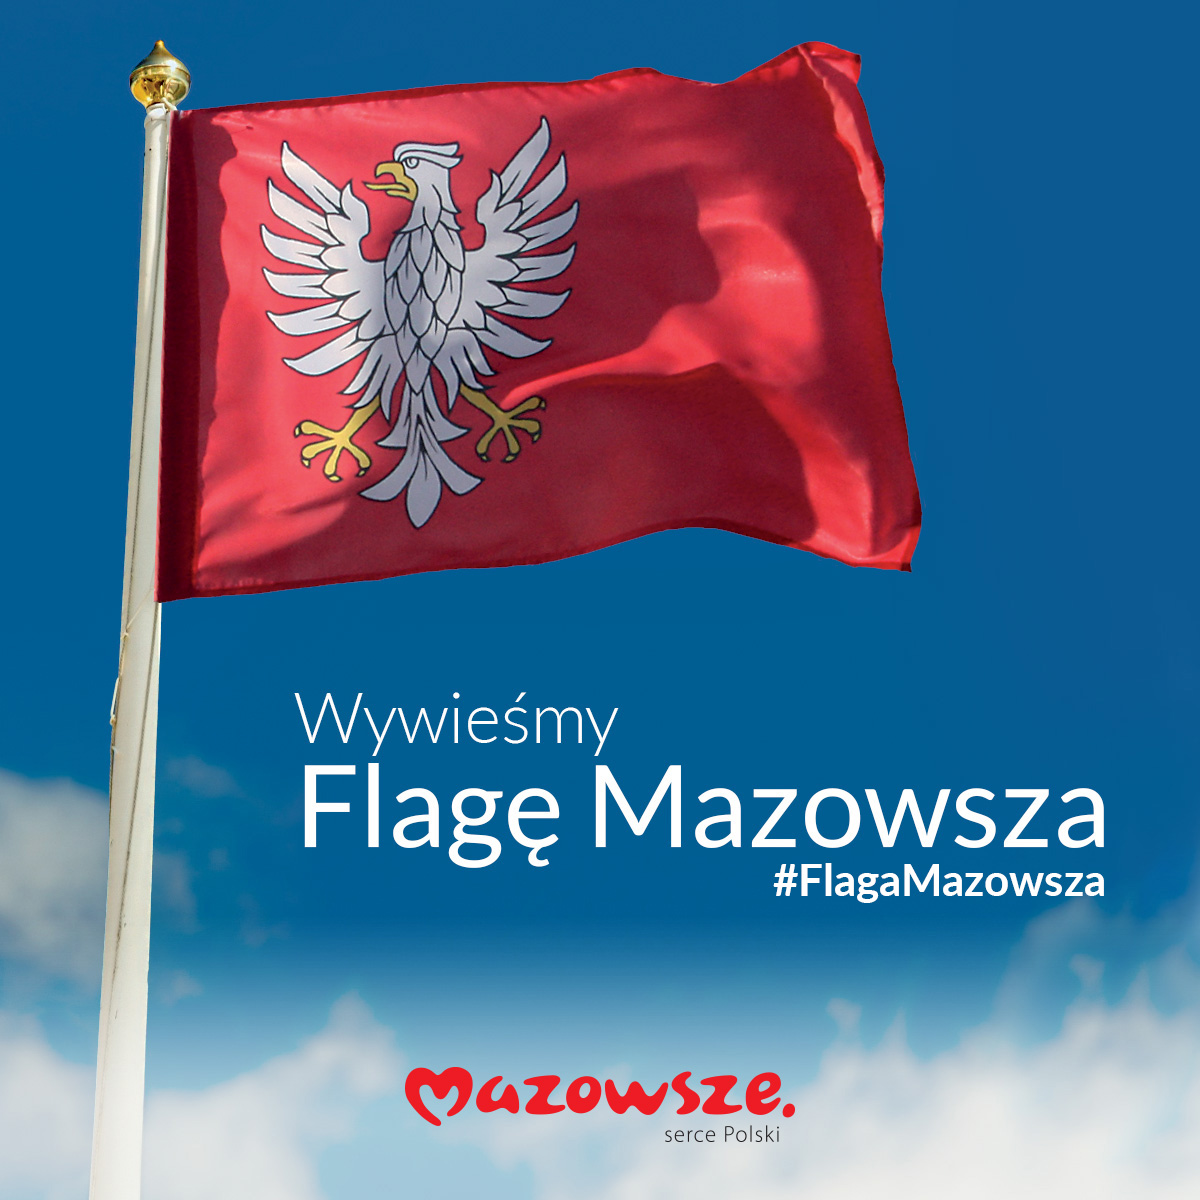 Grafika przedstawiająca Czerwoną flagę z białym orłem, powiewającą na tle niebieskiego nieba. Pod flagą napis Wywieśmy flagę Mazowsza. Na samym dole na środku znajduje się logo Mazowsze serce Polski